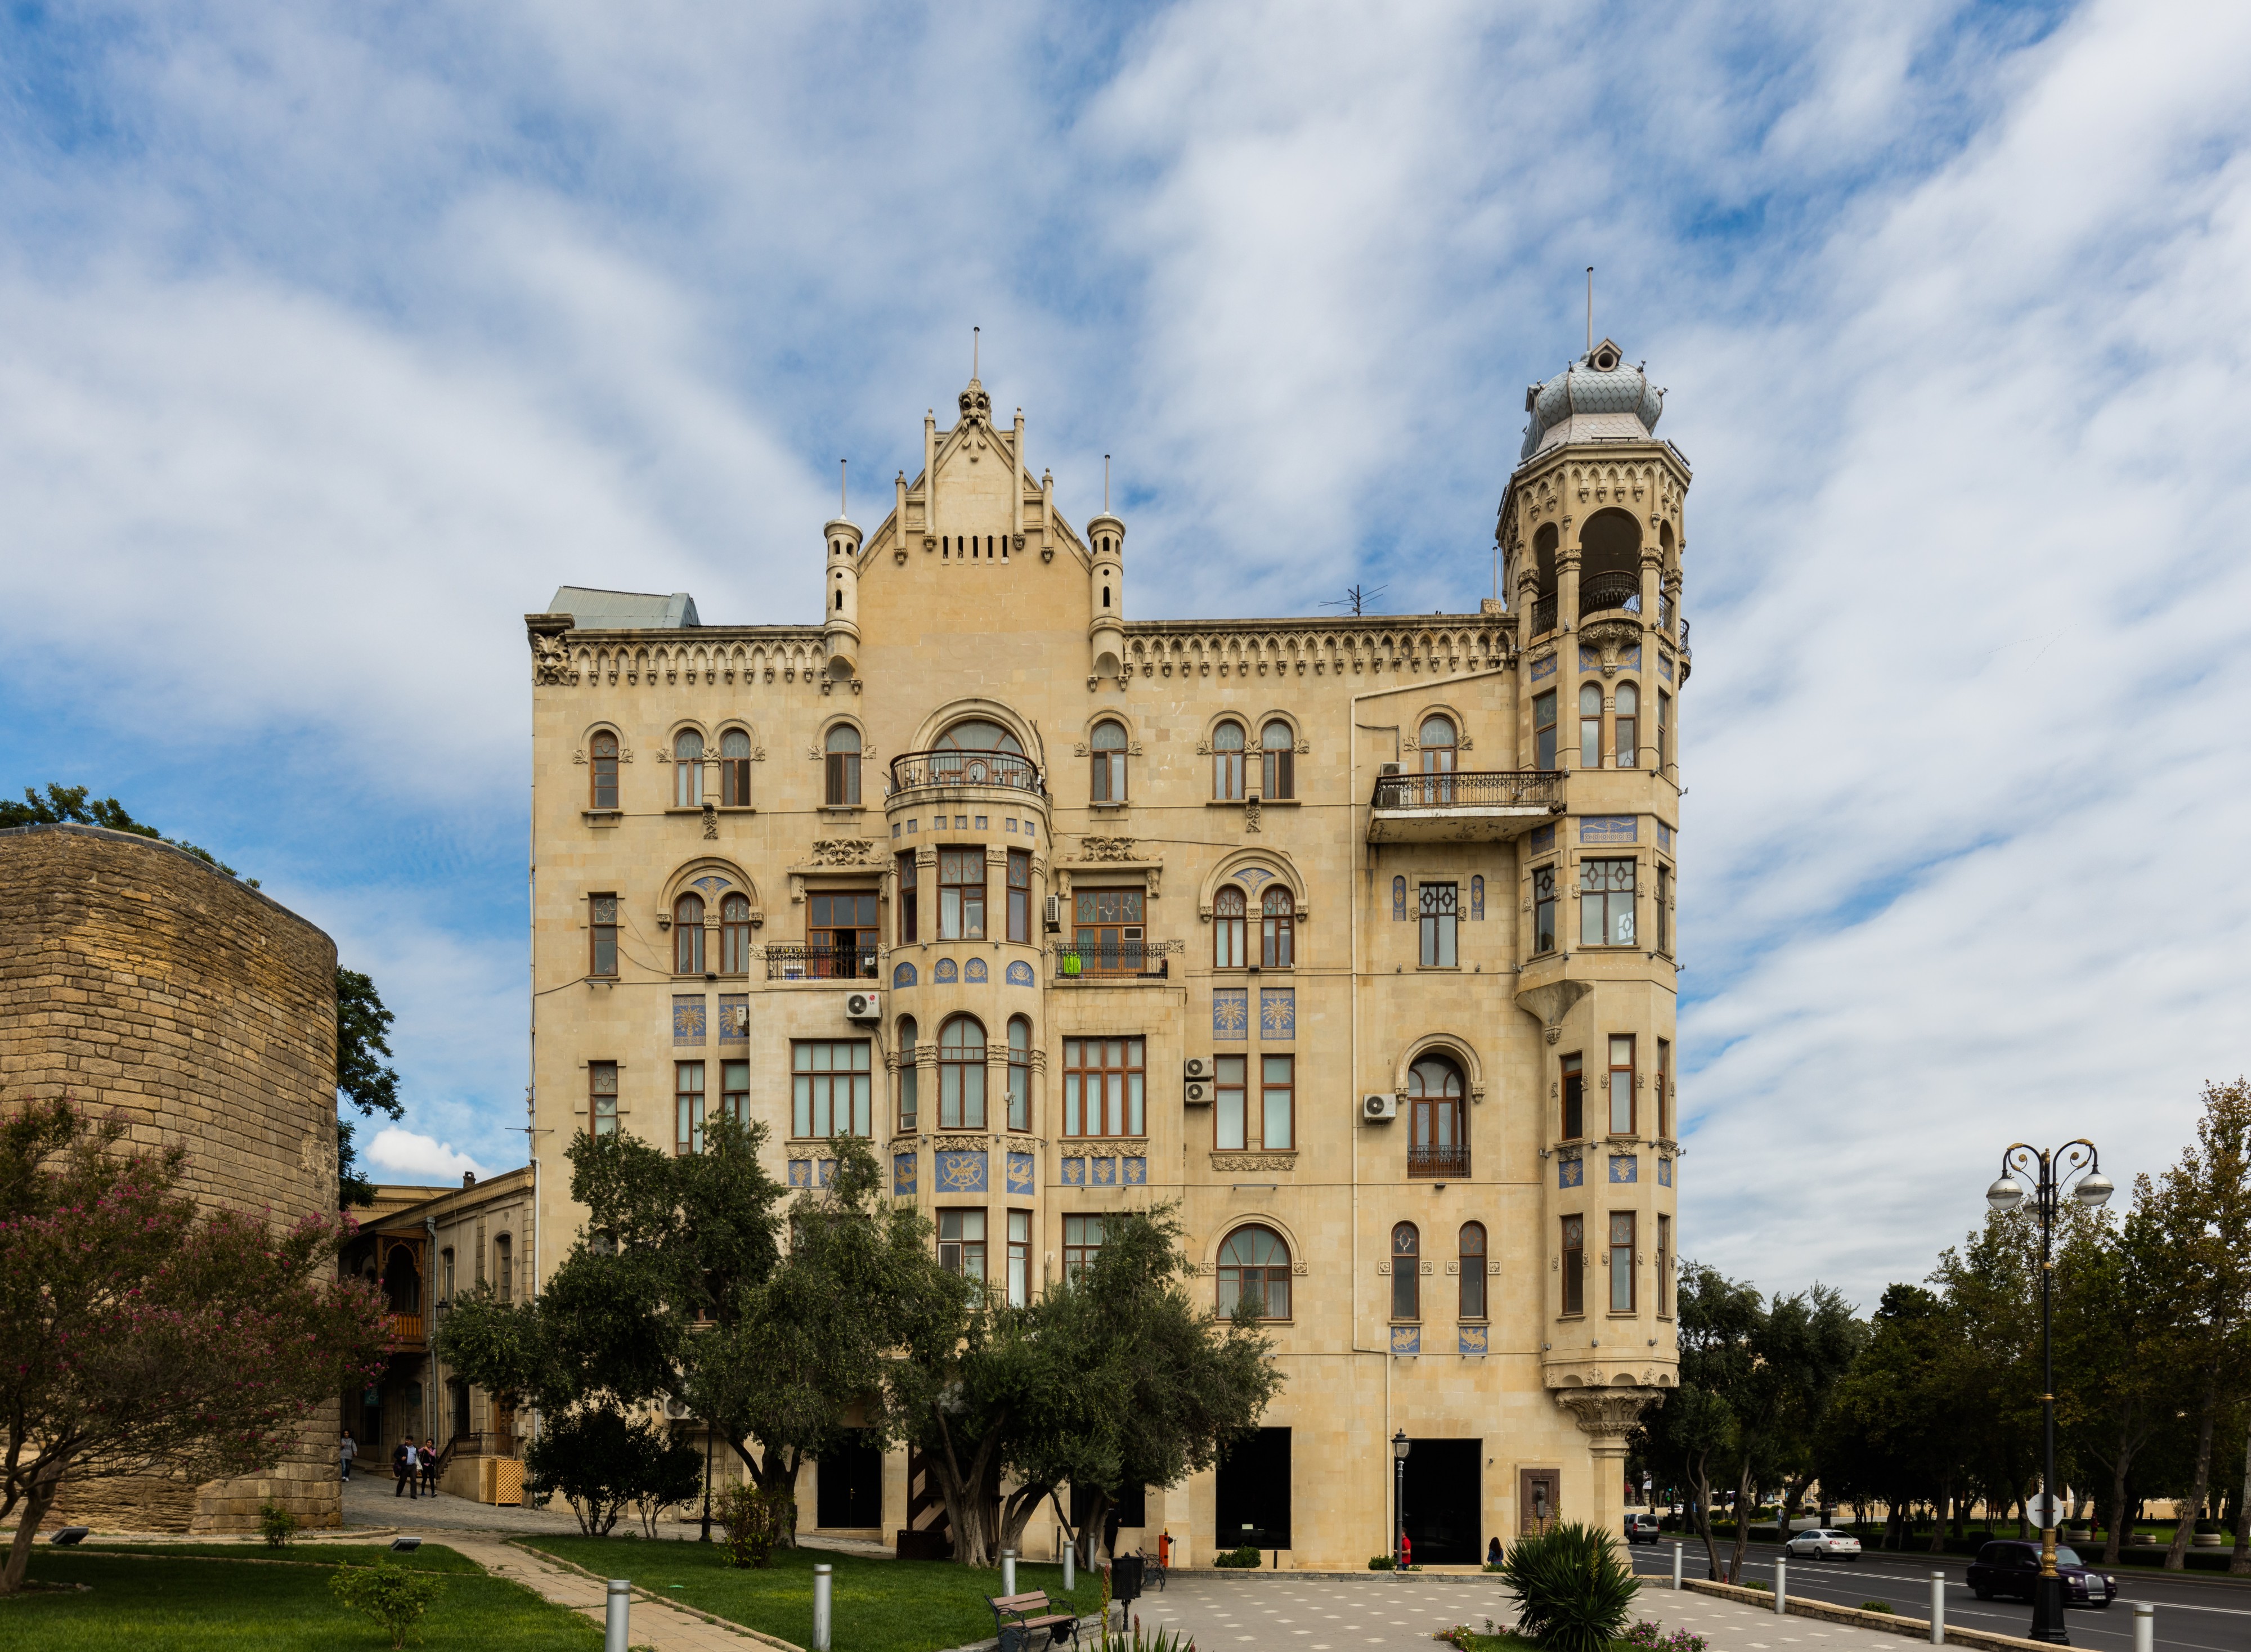 Edificio en Baku, Azerbaiyán, 2016-09-26, DD 07